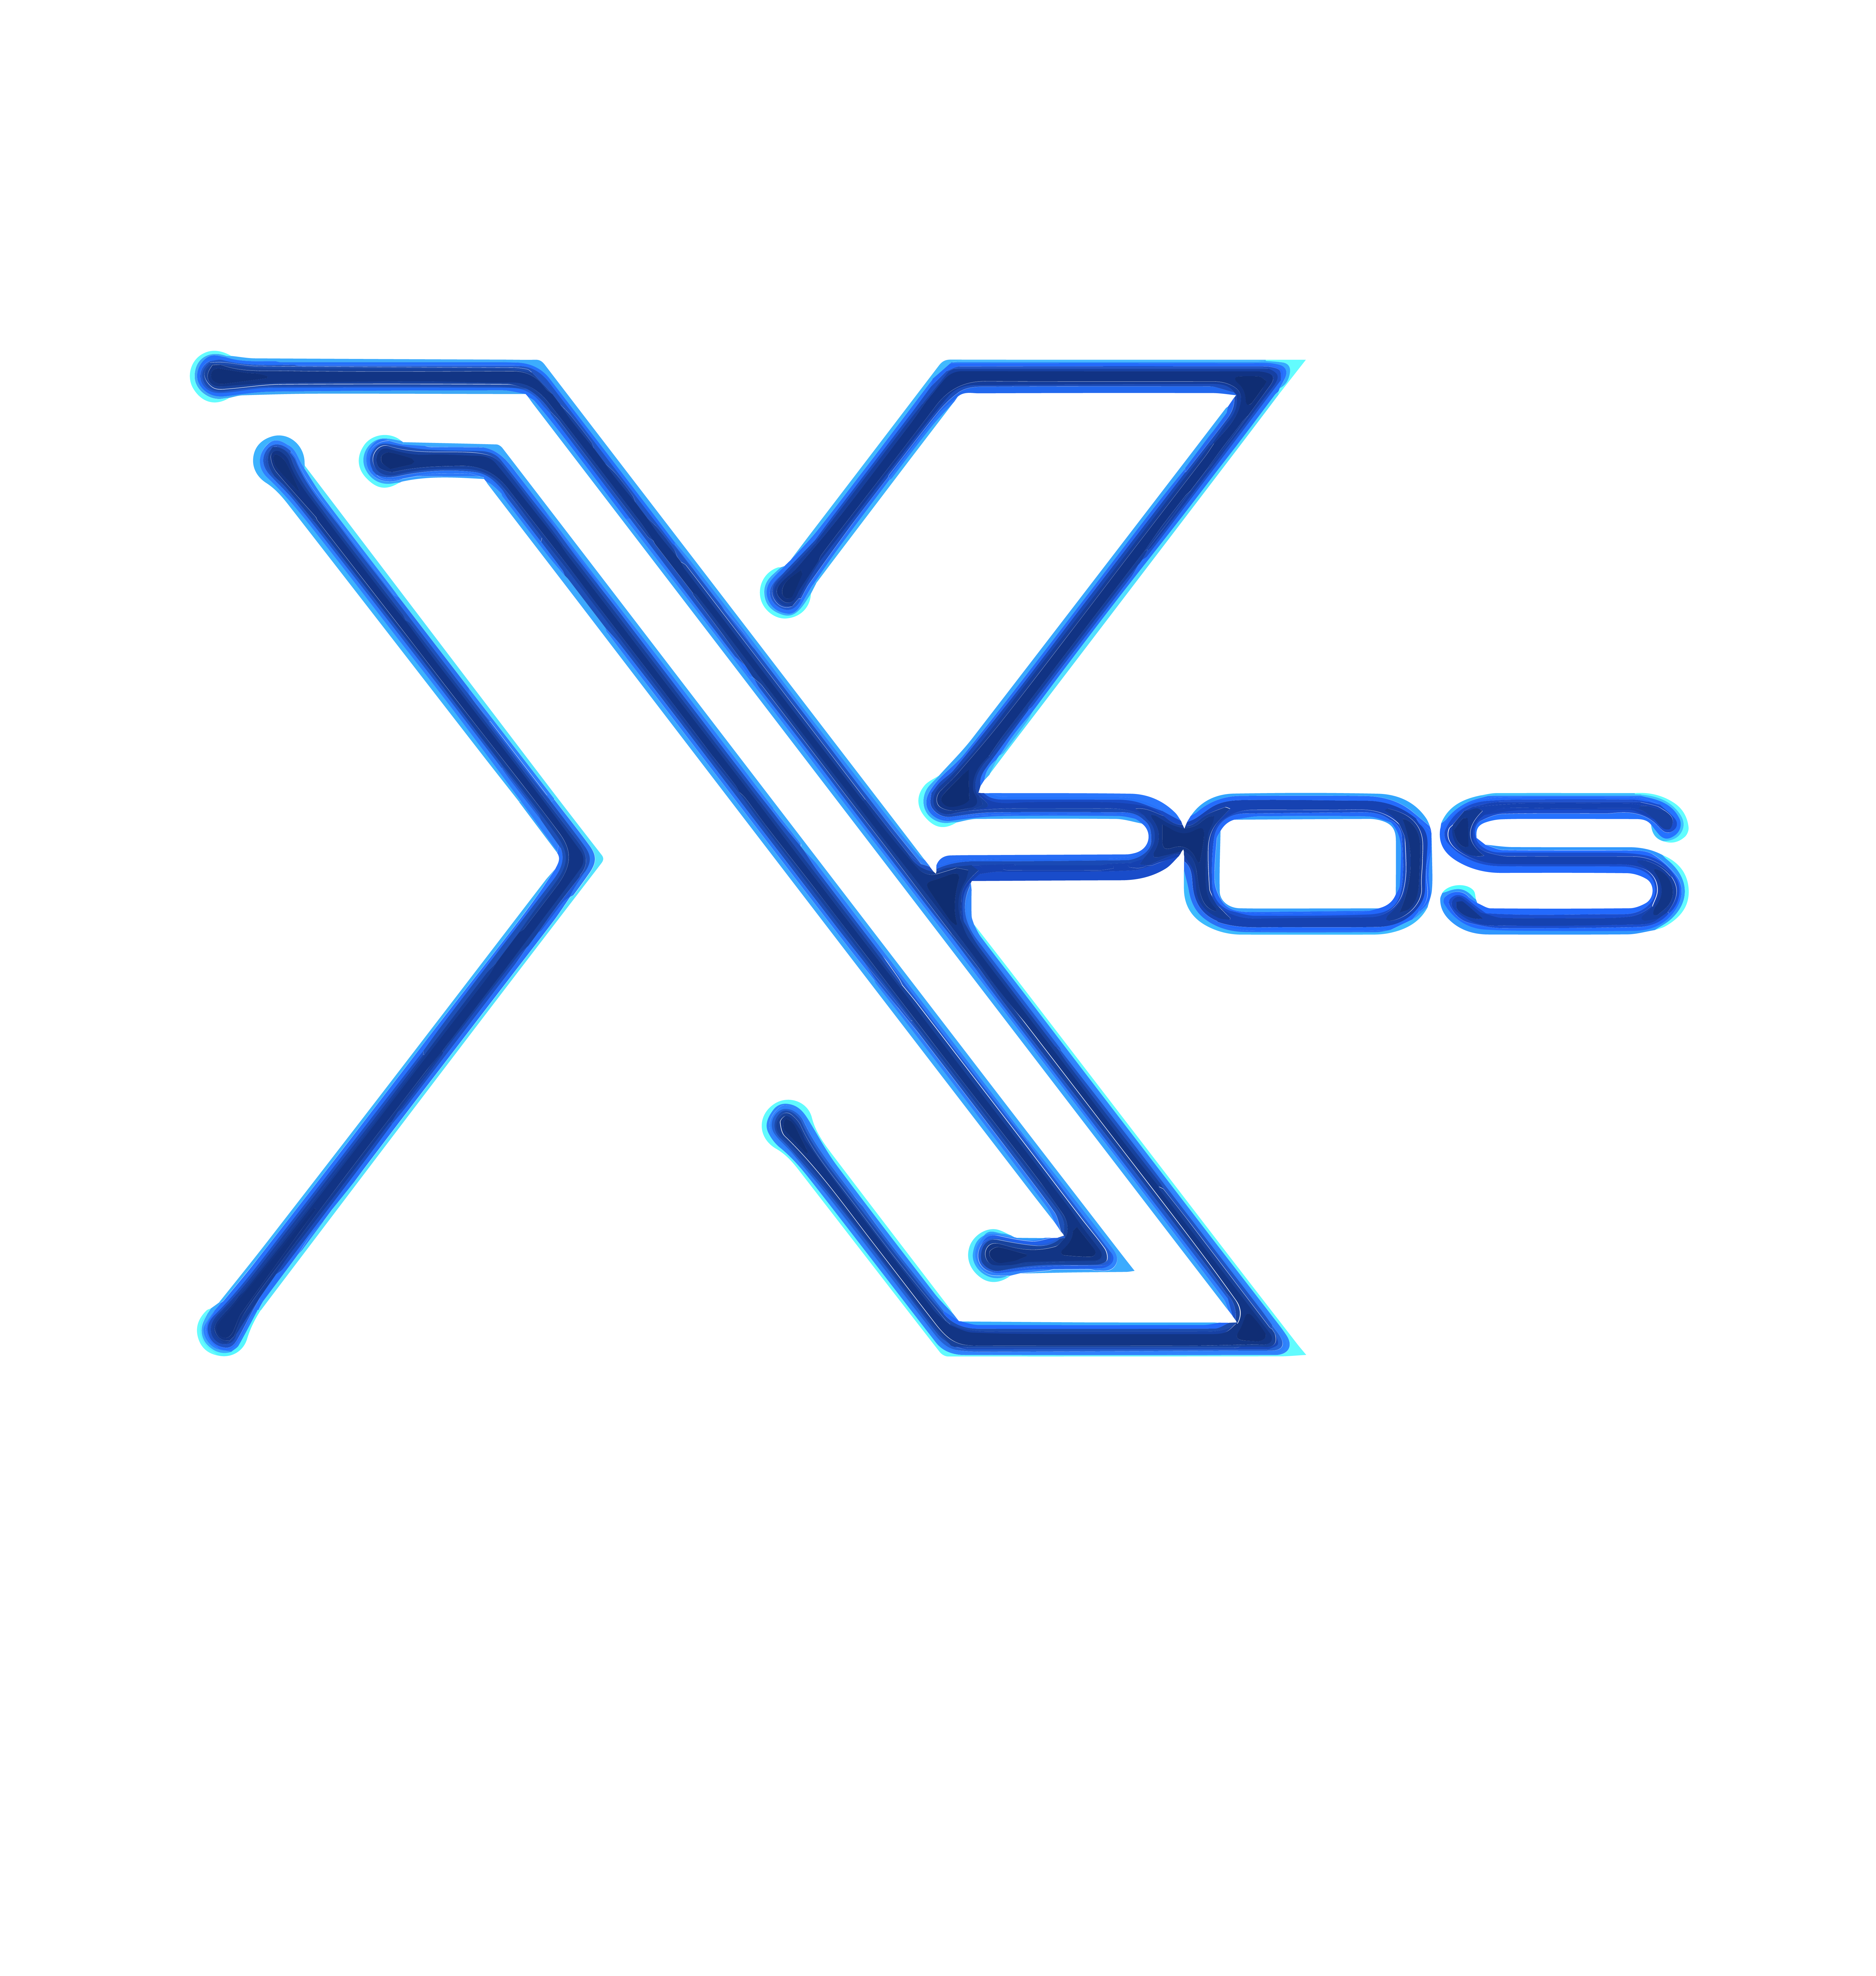 XPOS - Systeme d'encaissement évolué - Bornes - Monnayeurs - QRCODE -